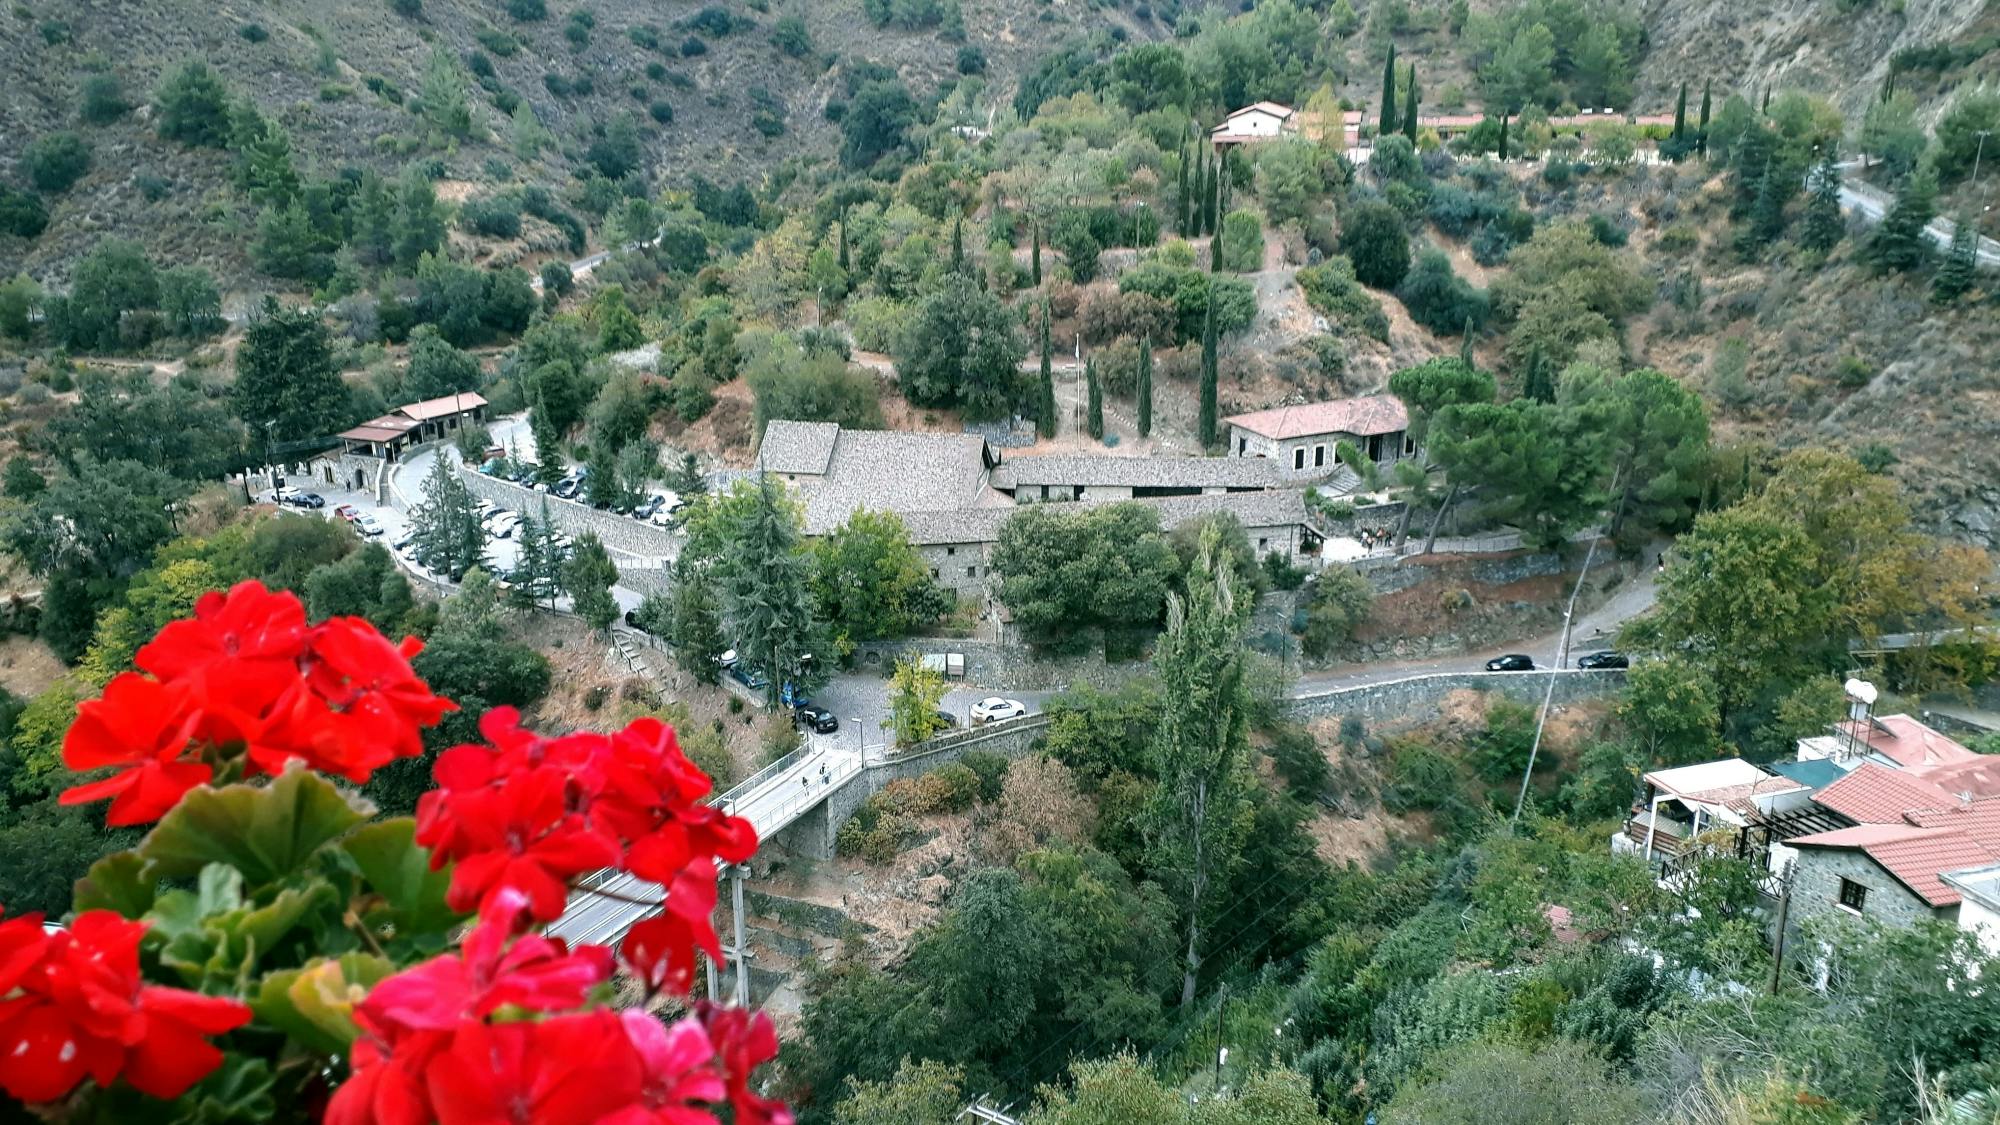 Troodos Mountain Villages Tour with Lampadistis Monastery